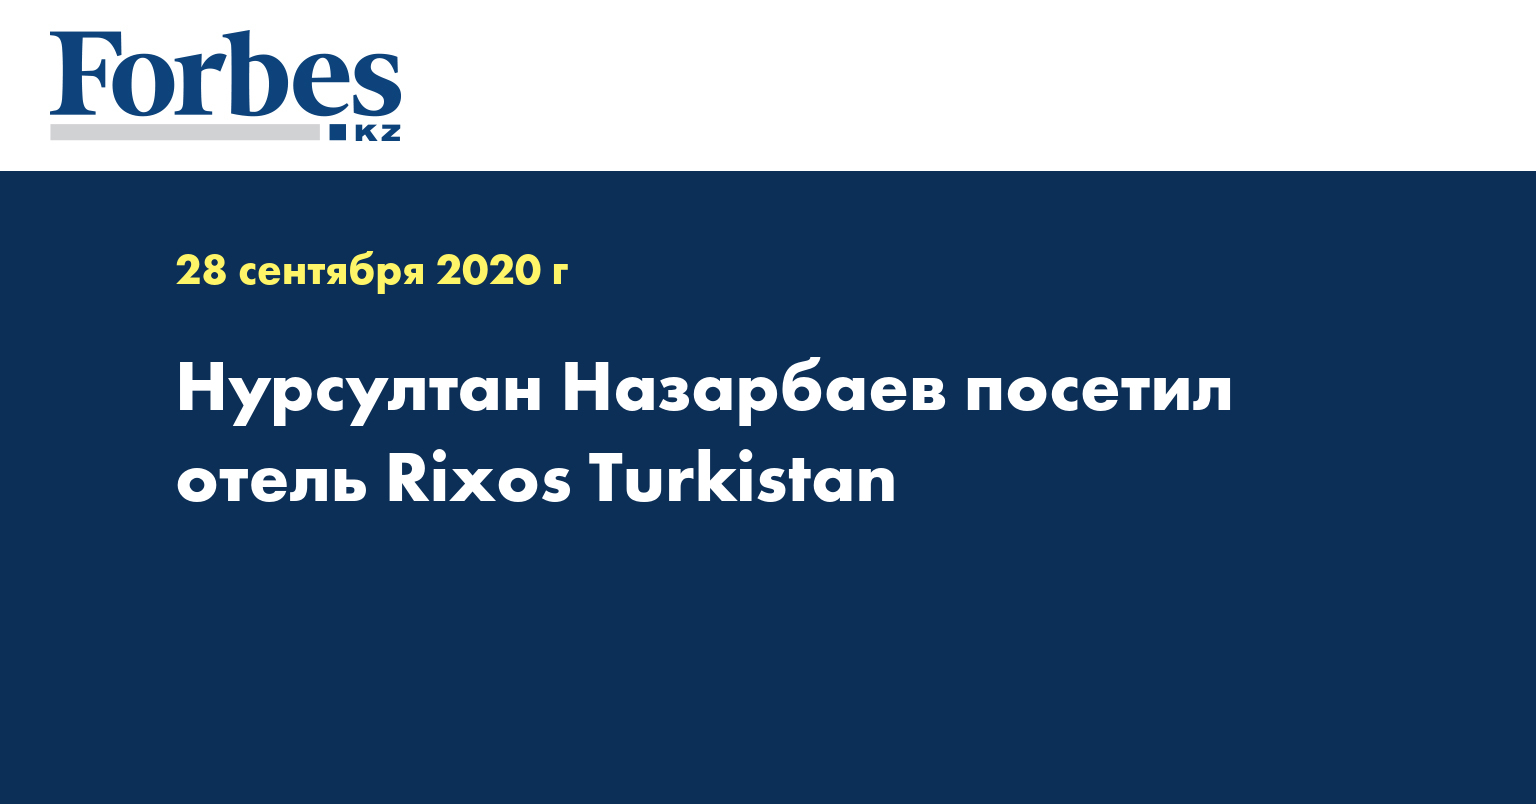 Нурсултан Назарбаев посетил отель Rixos Turkistan